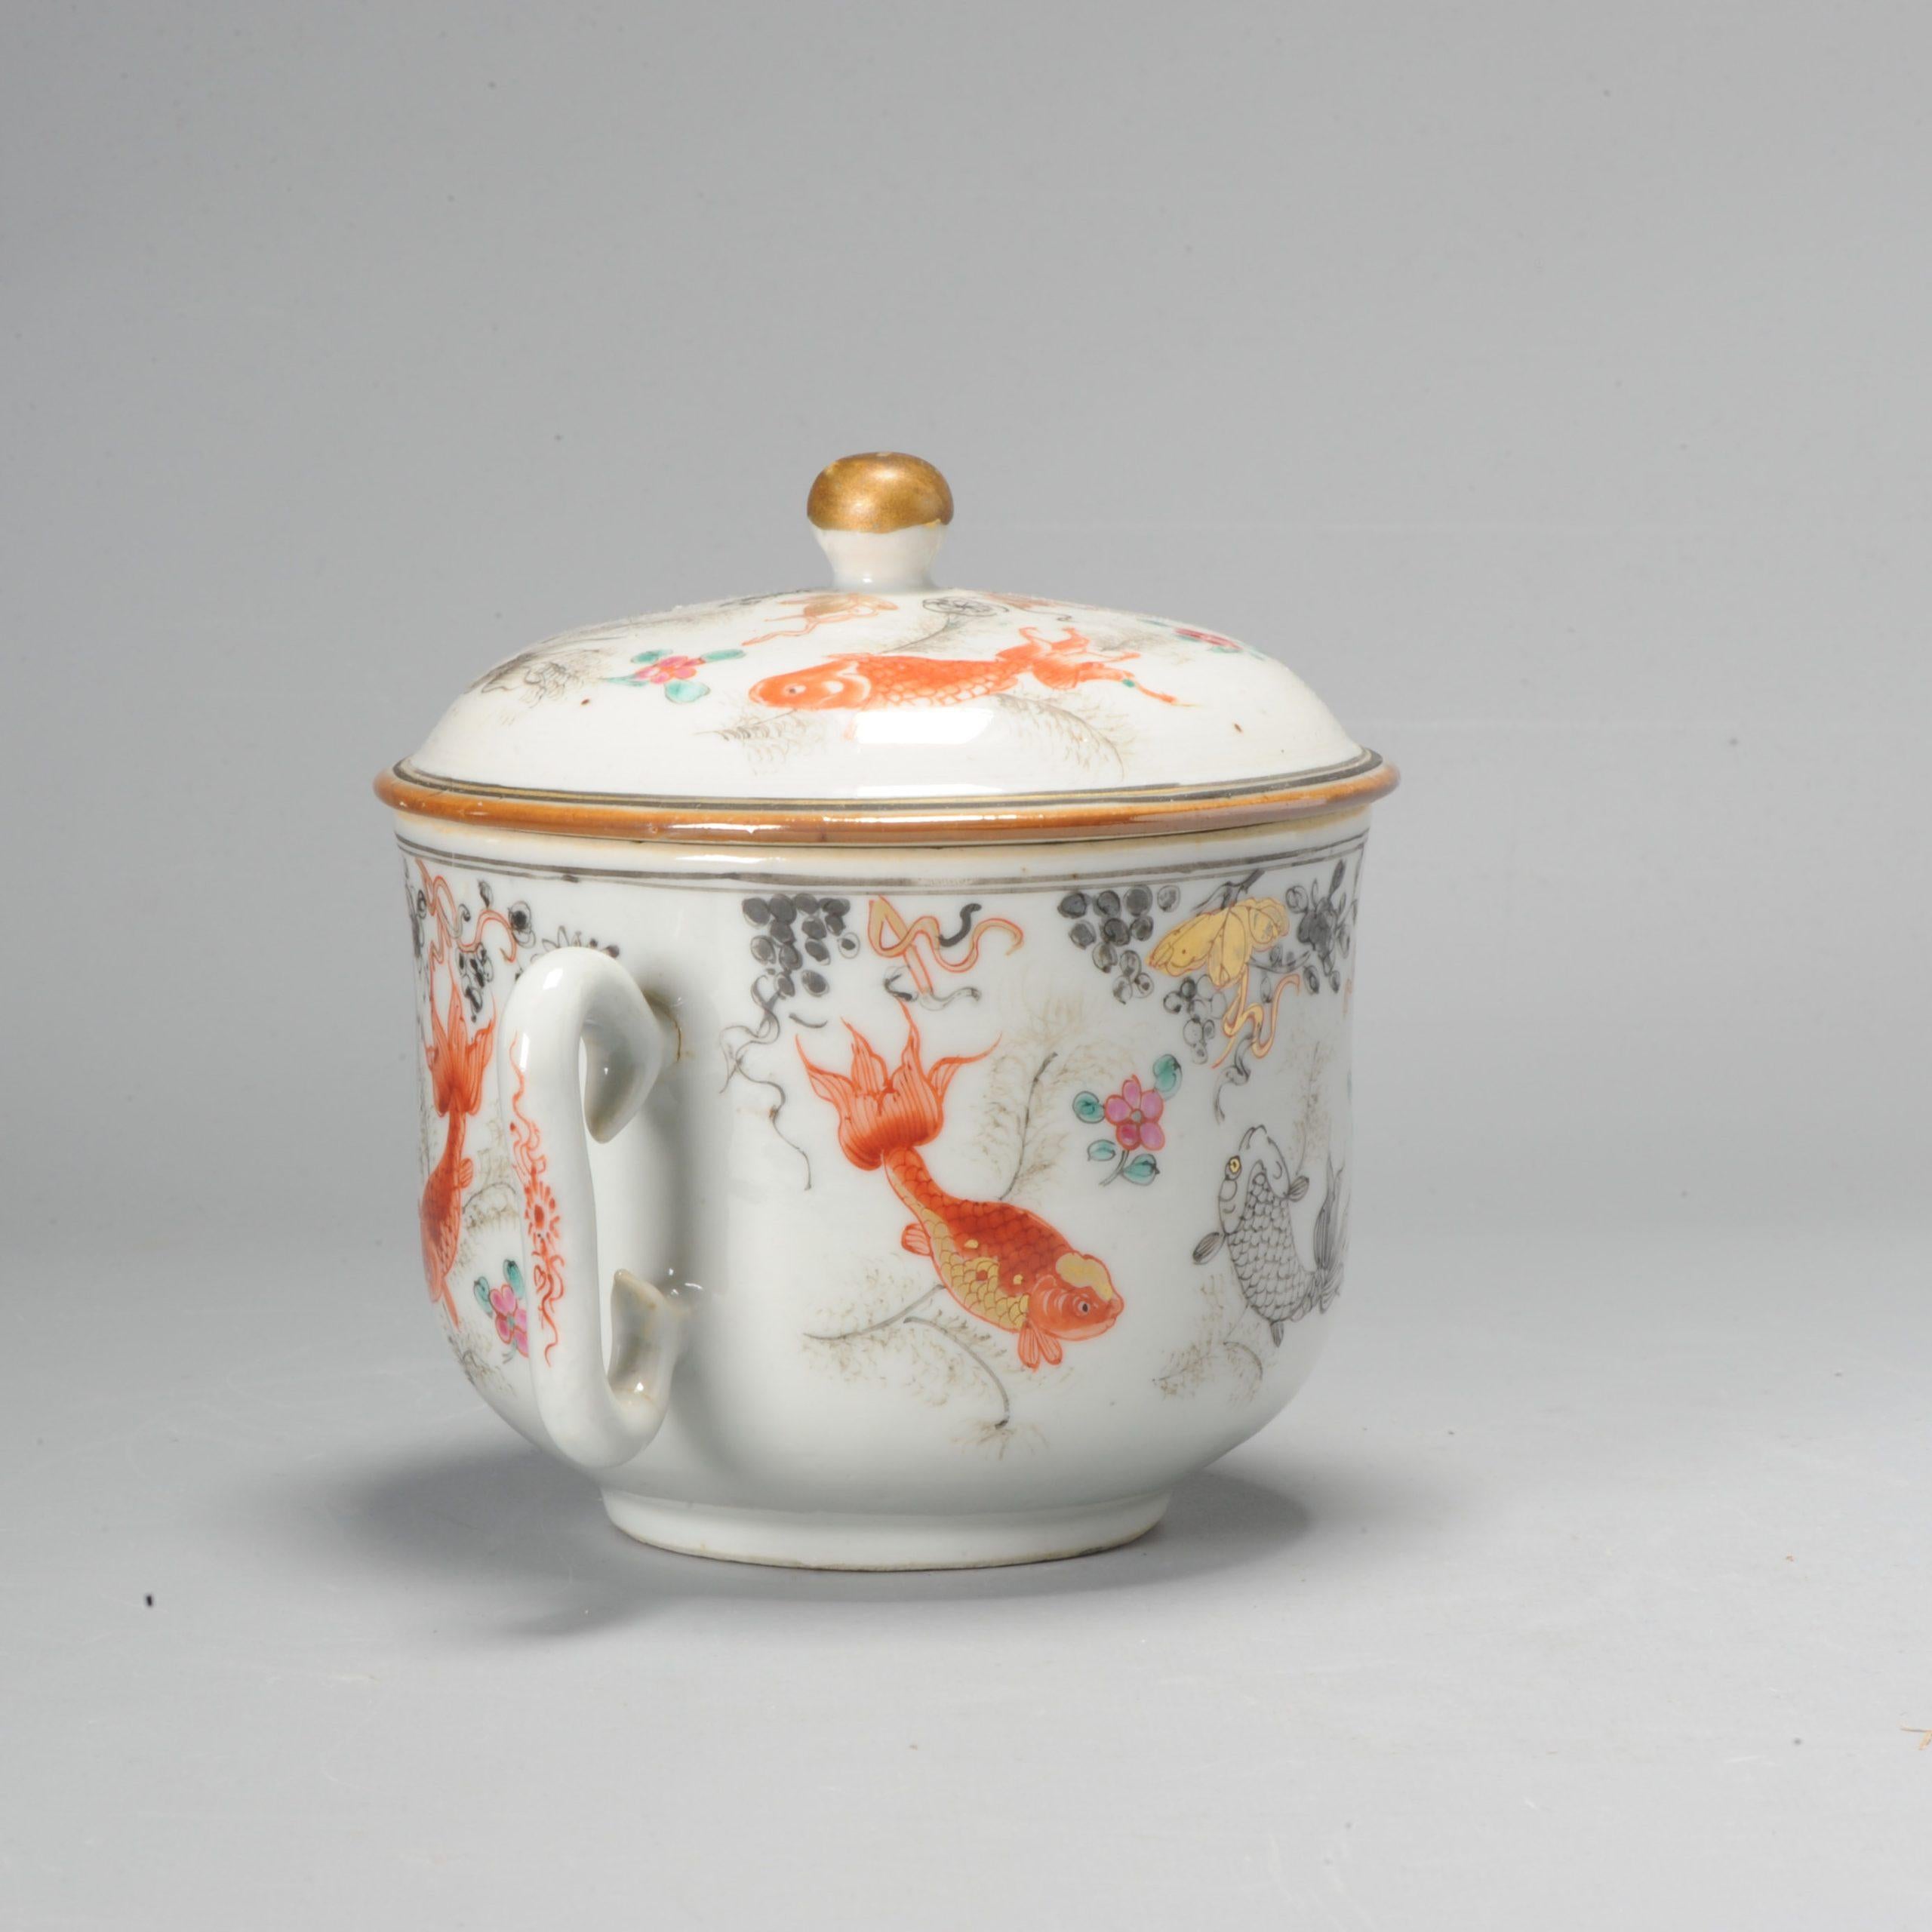 Questo vaso di porcellana cinese ben modellato e dipinto. Con scena di pesci rossi.

Informazioni aggiuntive:
Materiale: Porcellana e ceramica
Regione di origine: Cina
Imperatore: Qianlong (1735-1796), Yongzheng (1722-1735)
Periodo: XVIII secolo